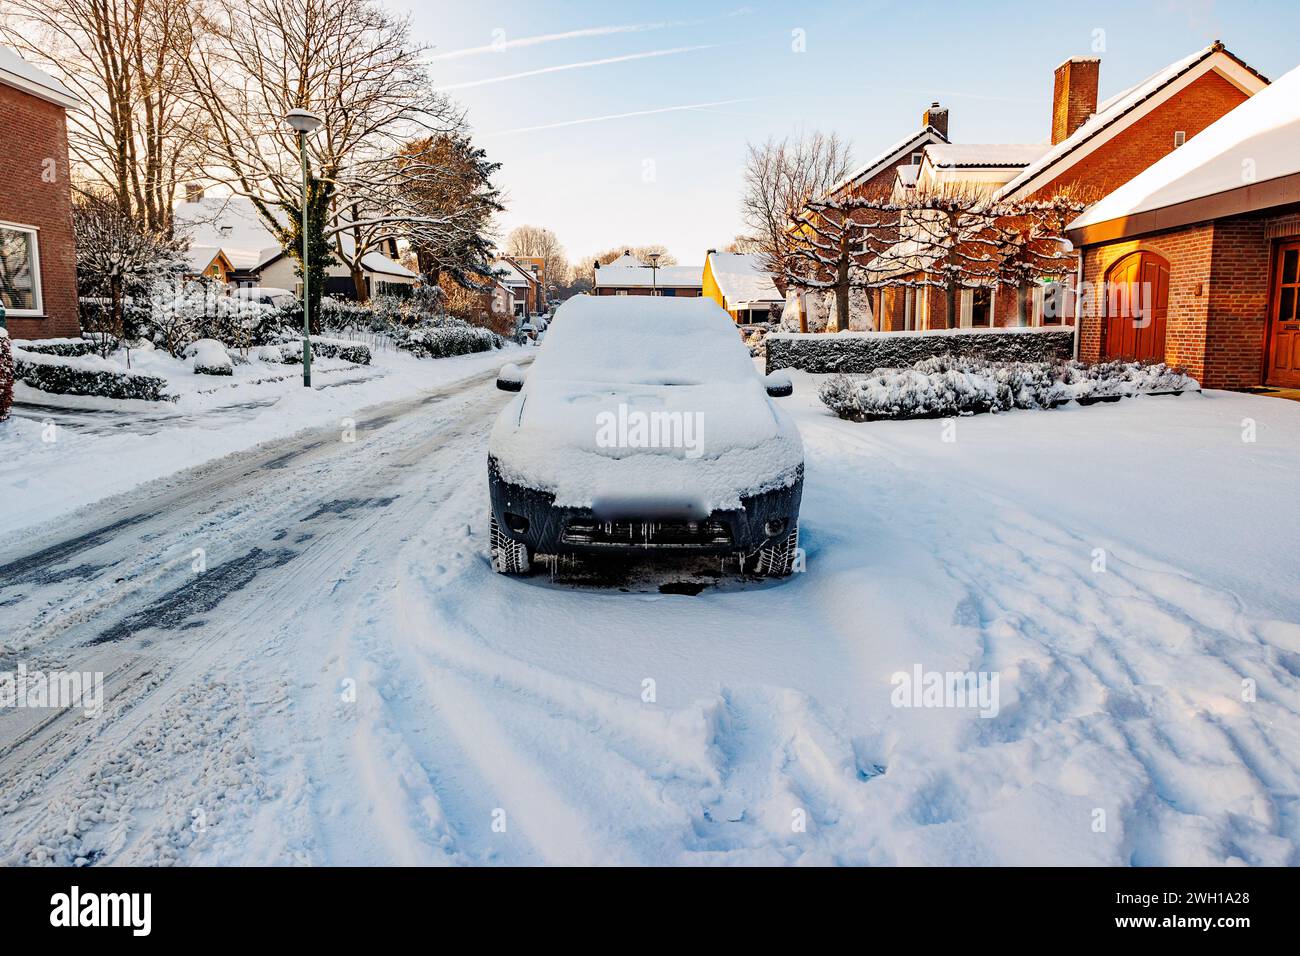 Paesaggio urbano invernale con una strada urbana, marciapiedi e un'auto coperta da uno spesso strato di neve, cespugli ghiacciati e alberi nudi su sfondo sfocato, soleggiato Foto Stock